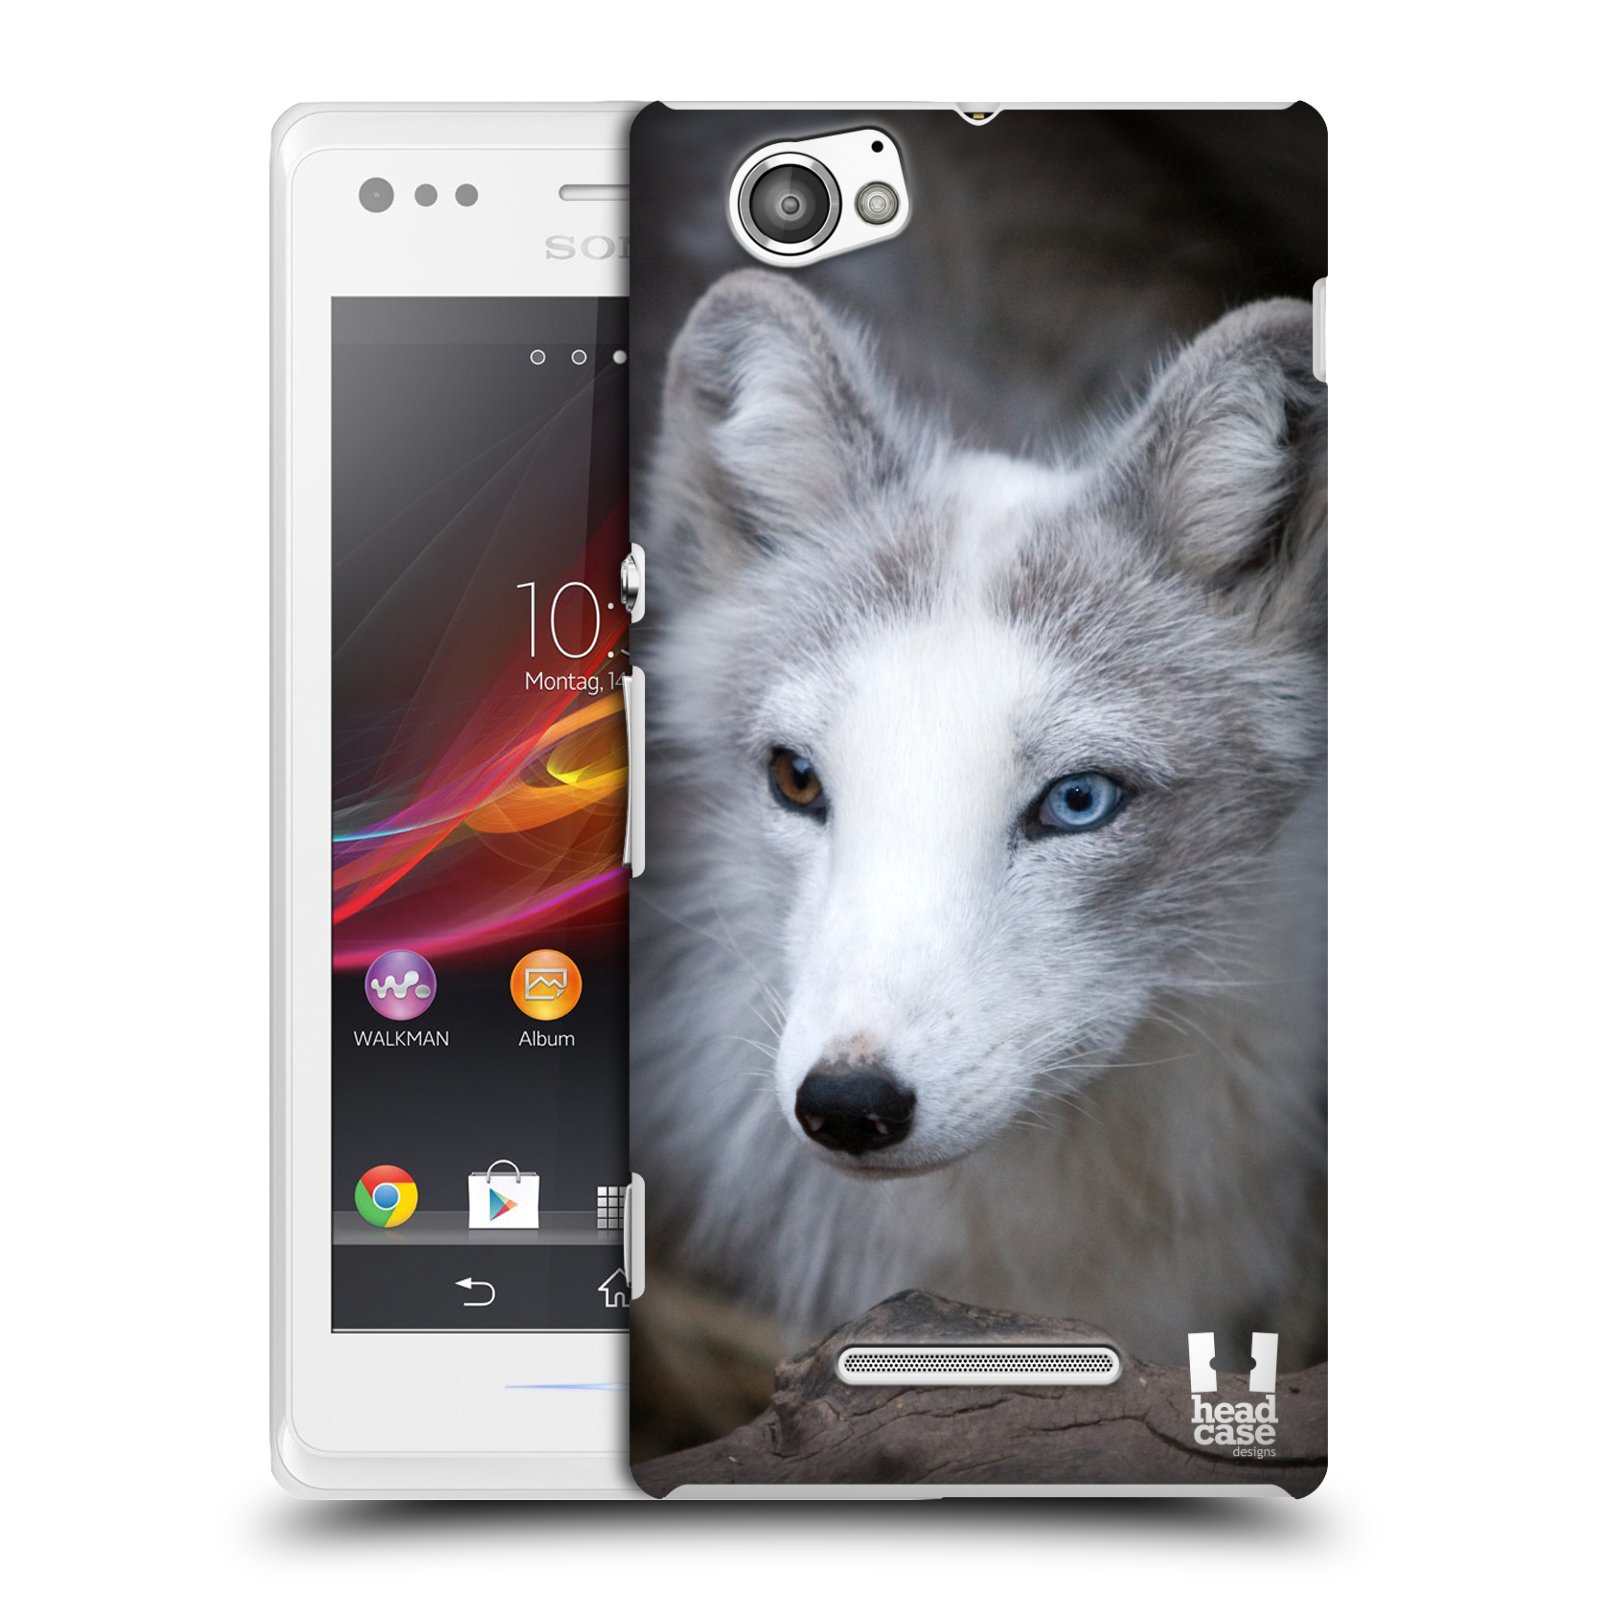 HEAD CASE plastový obal na mobil Sony Xperia M vzor slavná zvířata foto  Liška polární